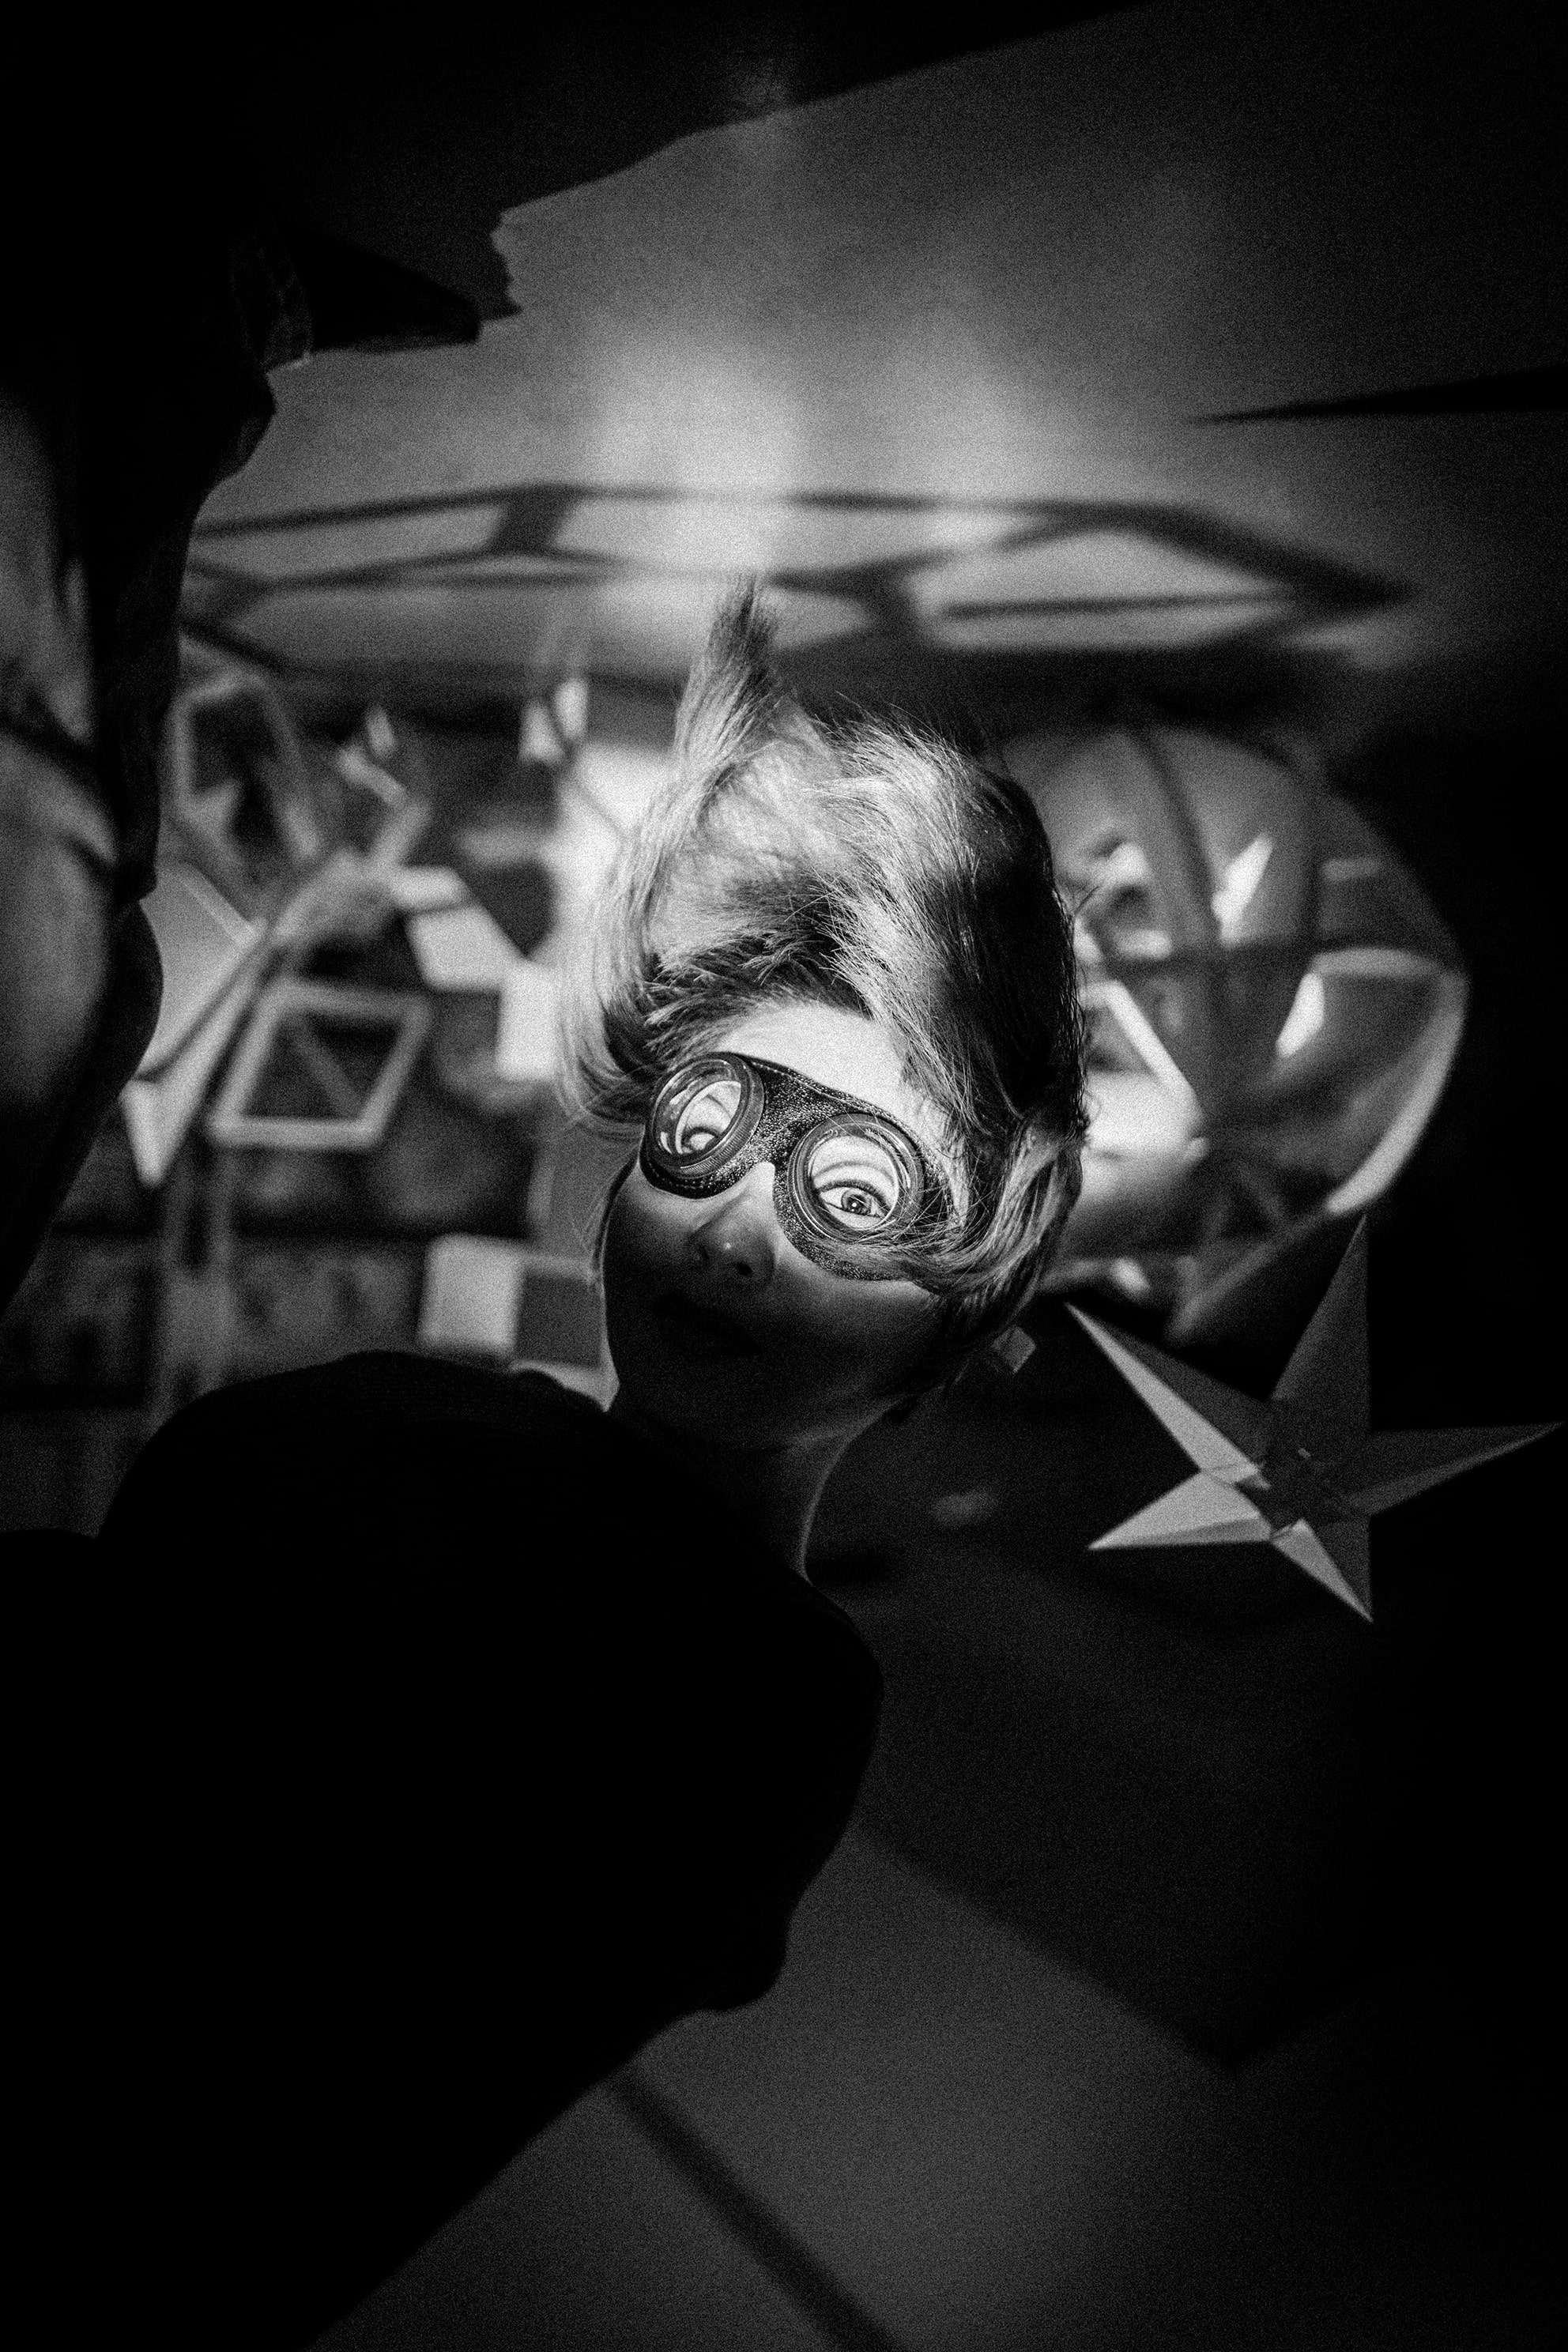 《徐世琪隆重呈獻：宇宙最強之懸浮者─Lauren O》於香港 M+ 延續徐世琪第59屆威尼斯雙年展的展覽